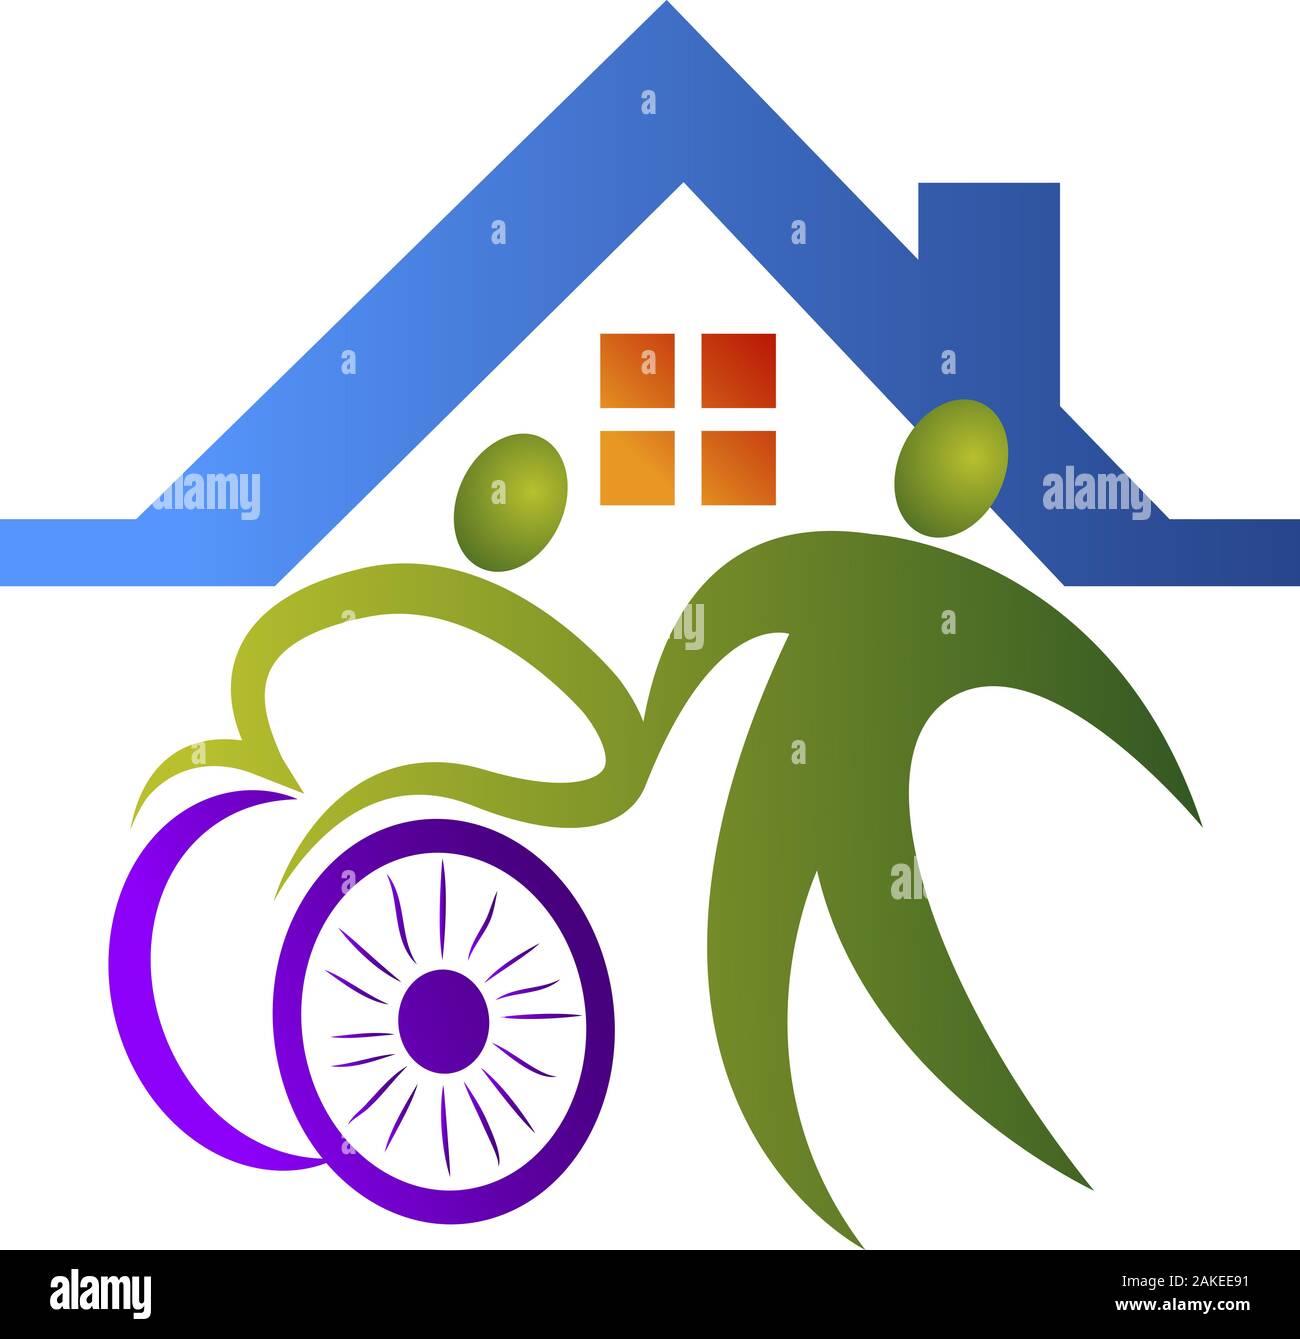 disable care logo Stock Photo